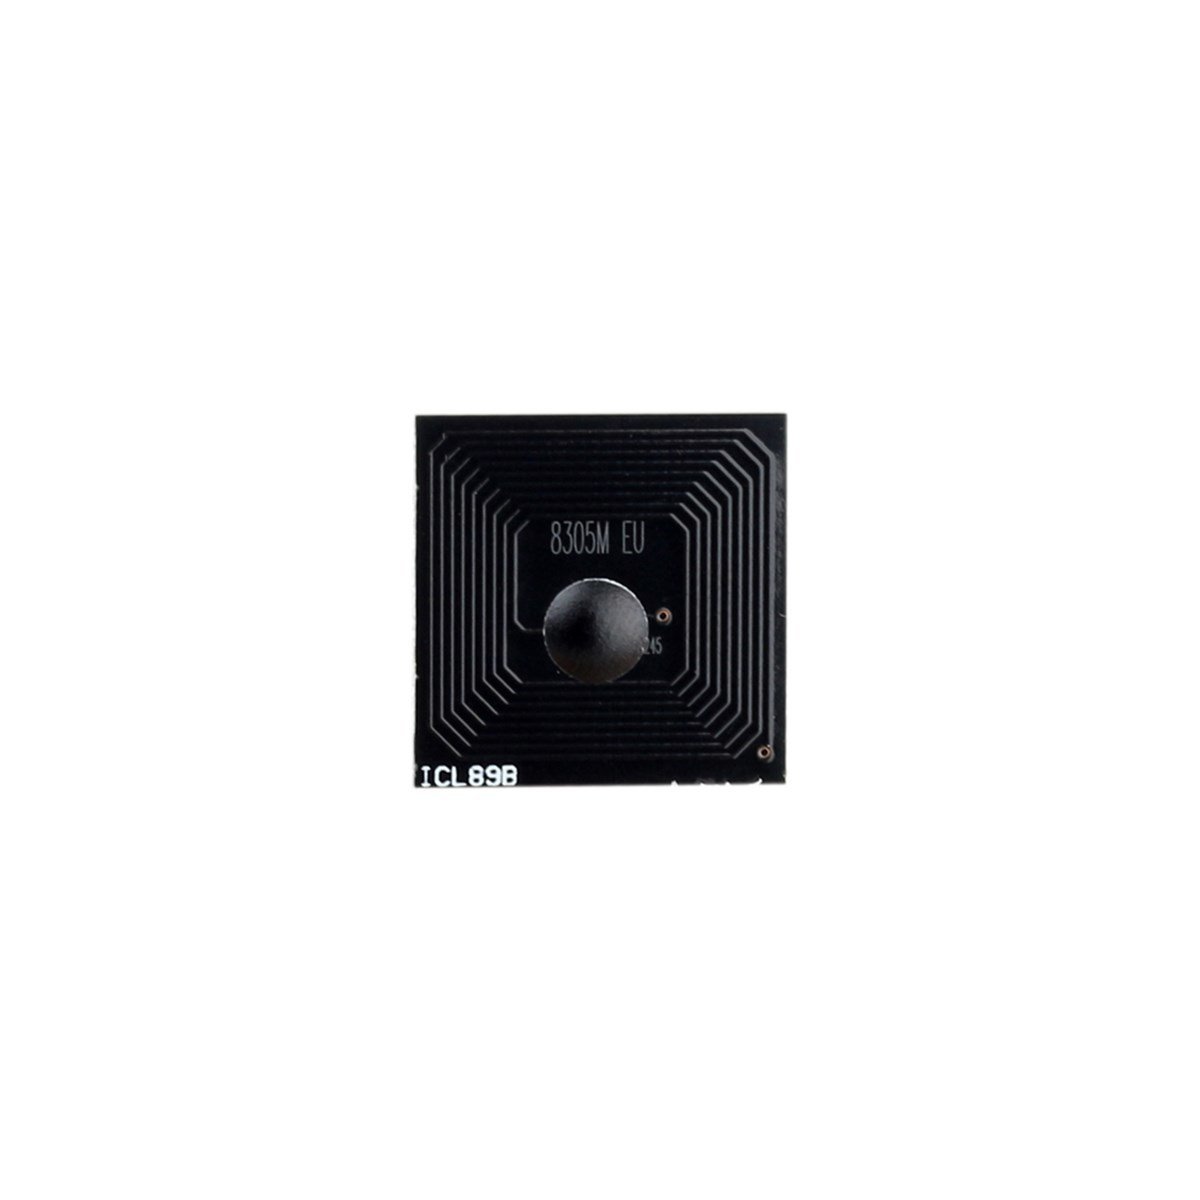 Utax CLP-3721 / PC-2160 Mavi Toner Çipi